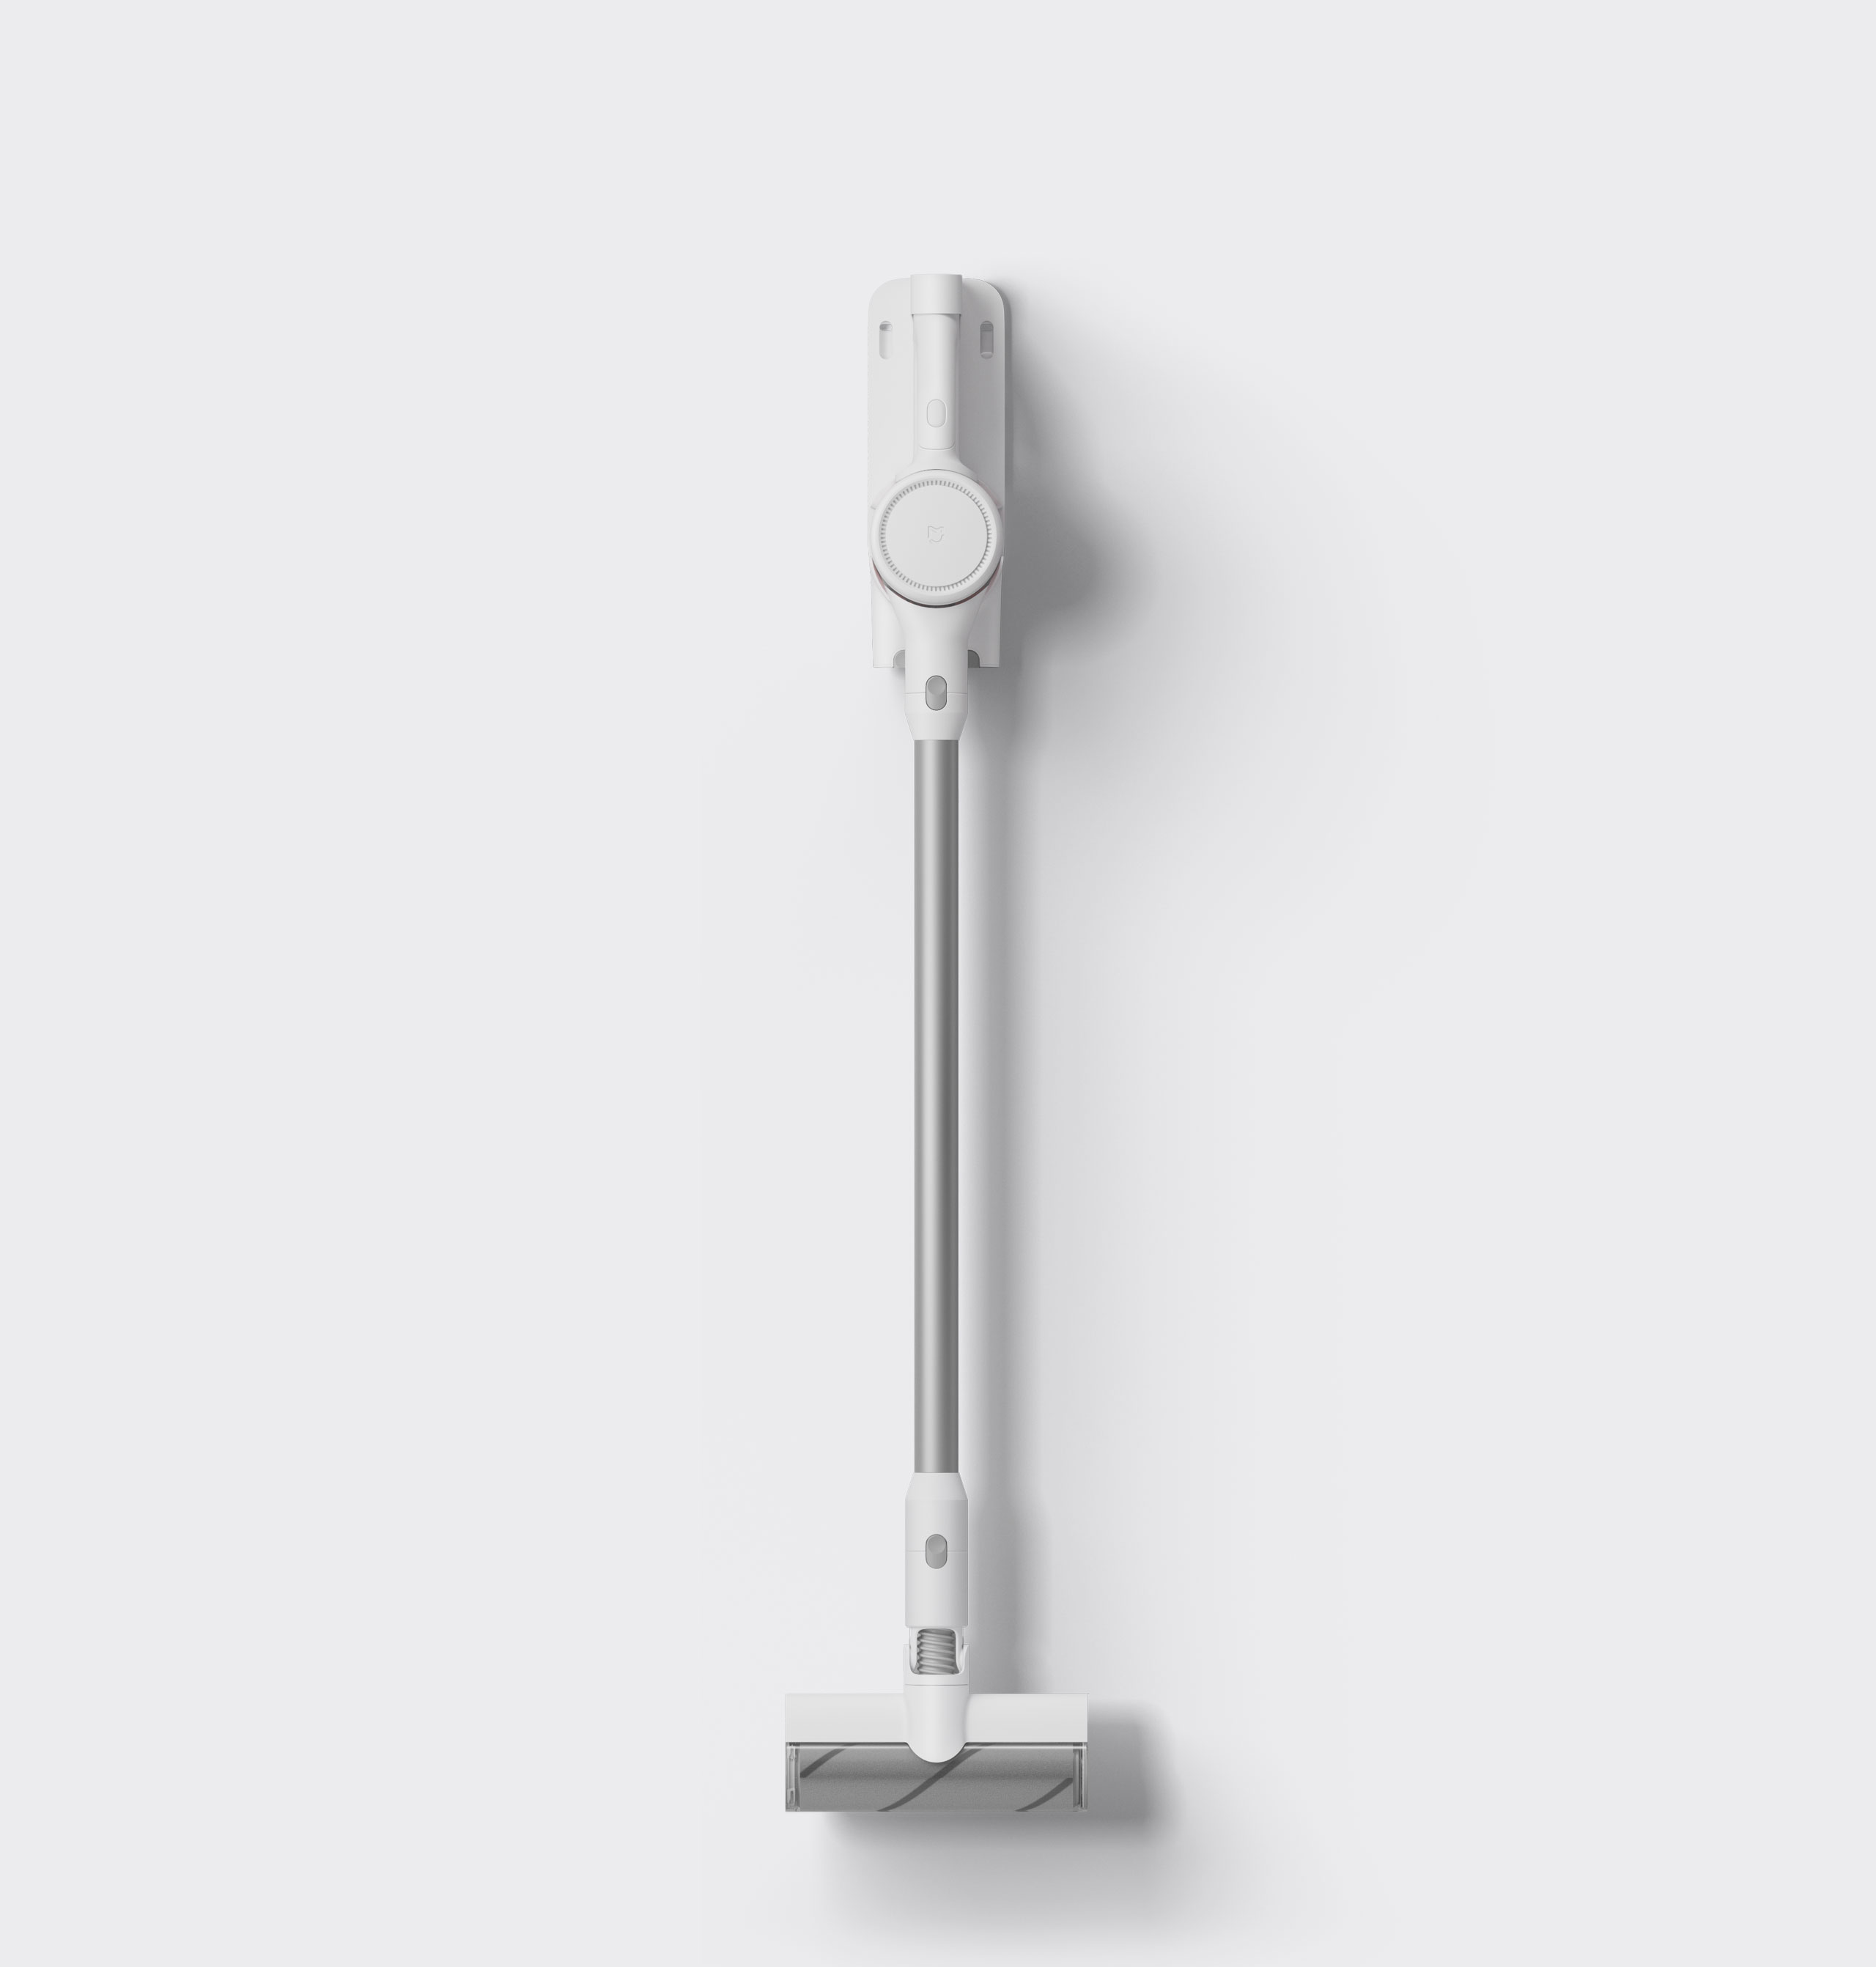 Xiaomi Handheld Vacuum Cleaner 1c Отзывы